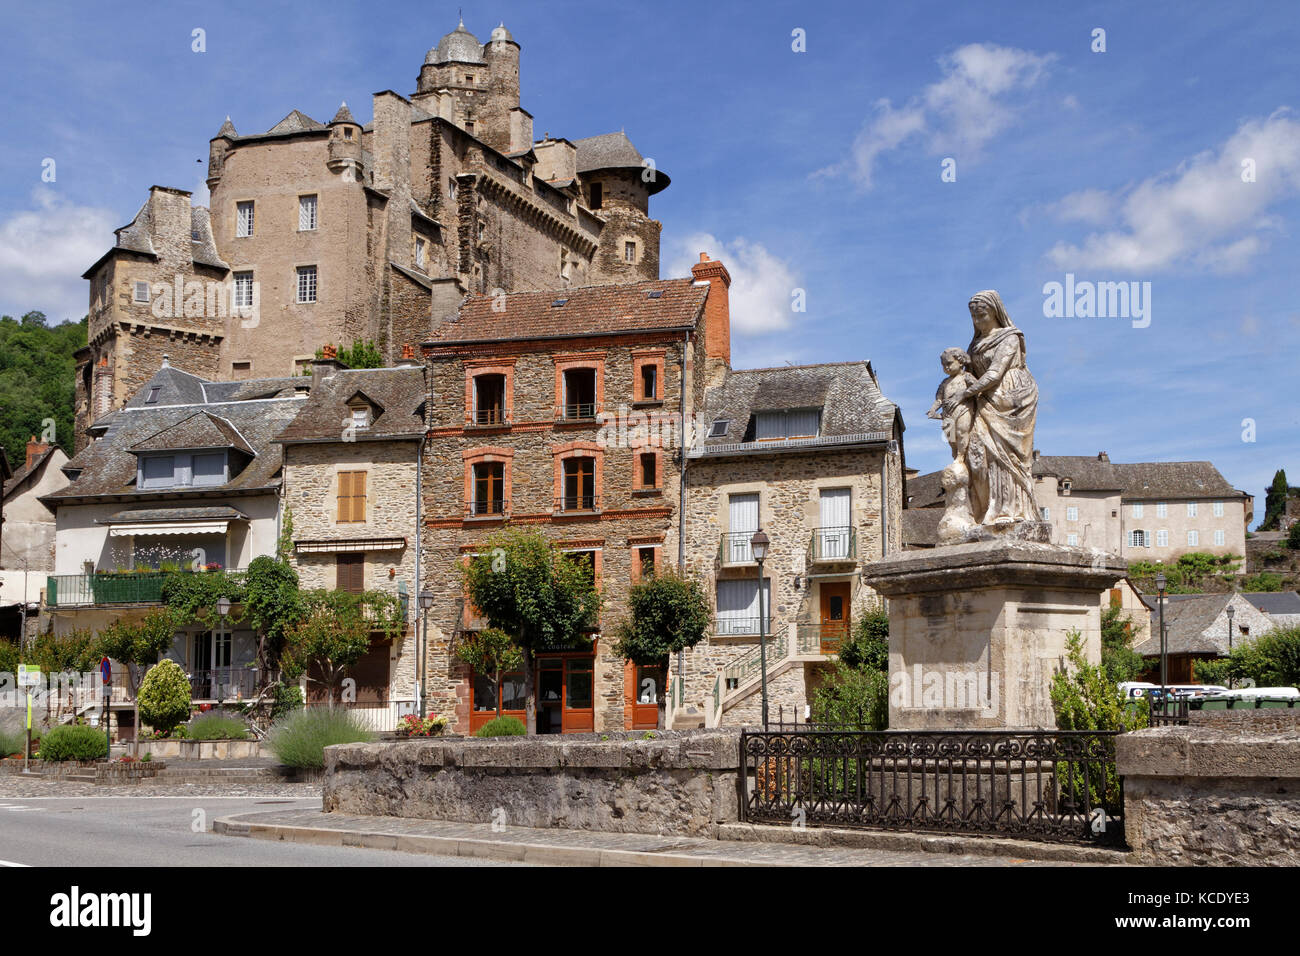 ESTAING, FRANKREICH, 19. Juni 2015 : Estaing gilt als eines der malerischsten Dörfer Frankreichs und ist berühmt für seine Burg. Stockfoto